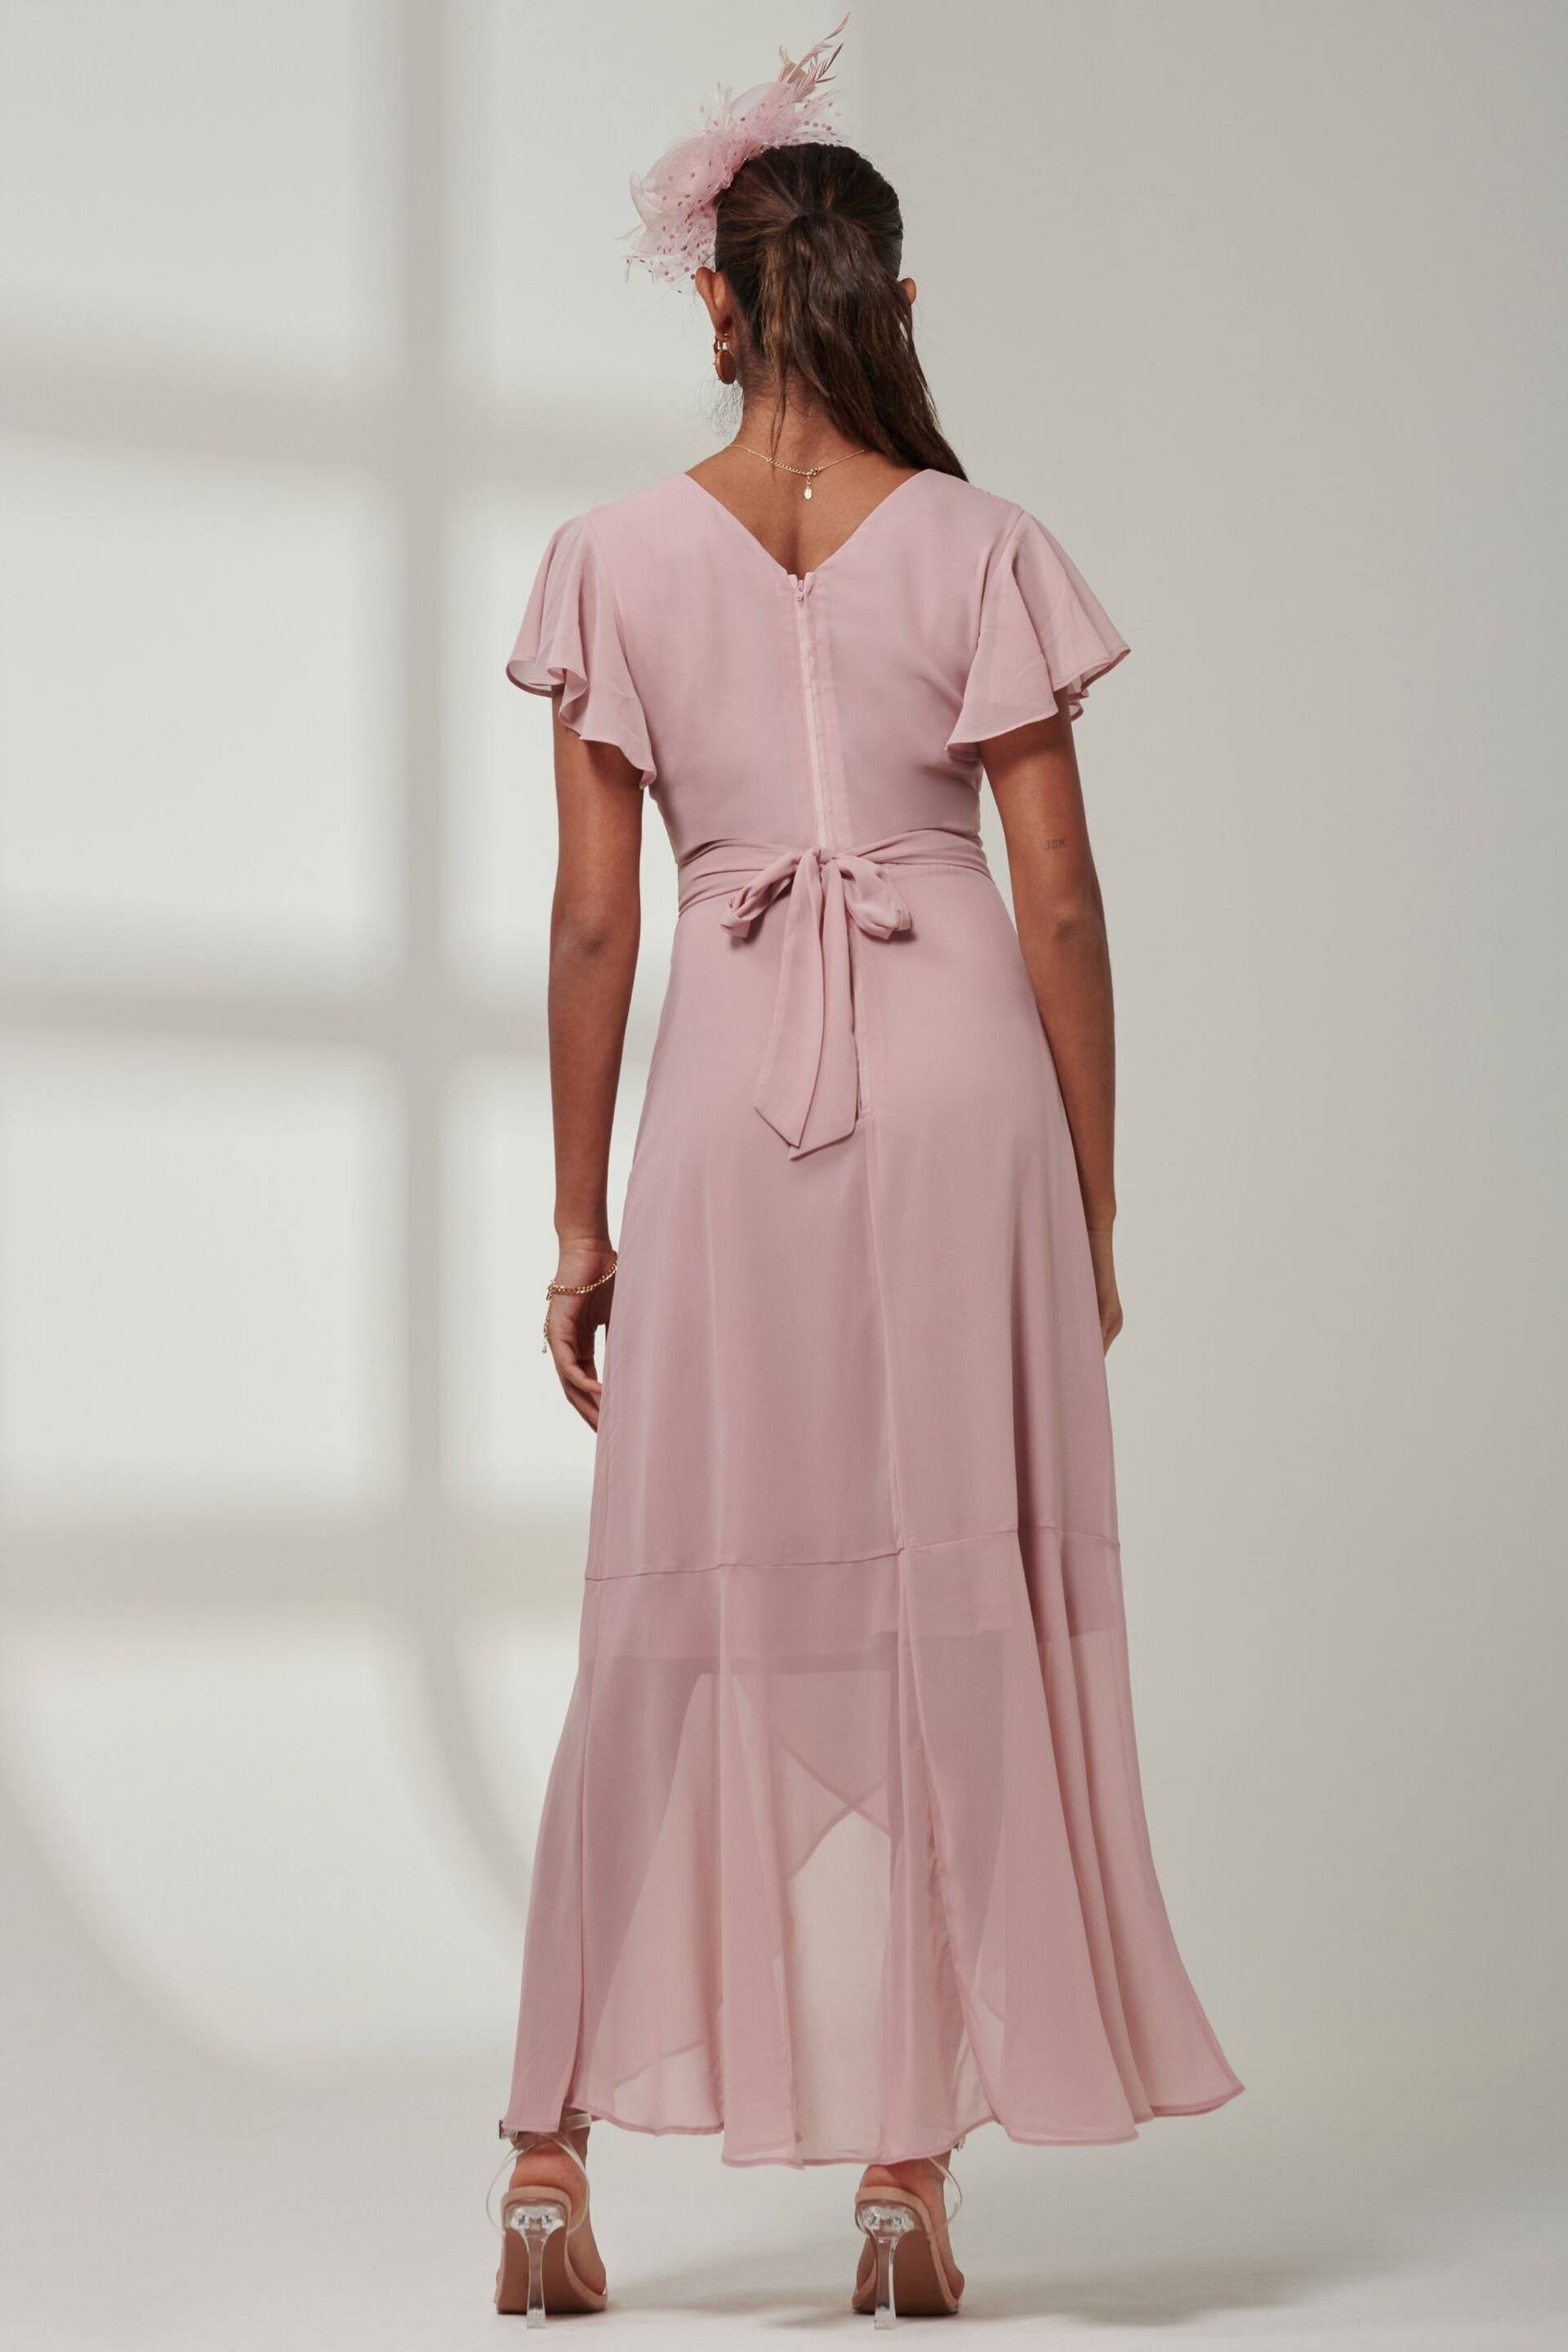 Jolie Moi Pink Vicky Chiffon Frill Maxi Dress - Image 2 of 6